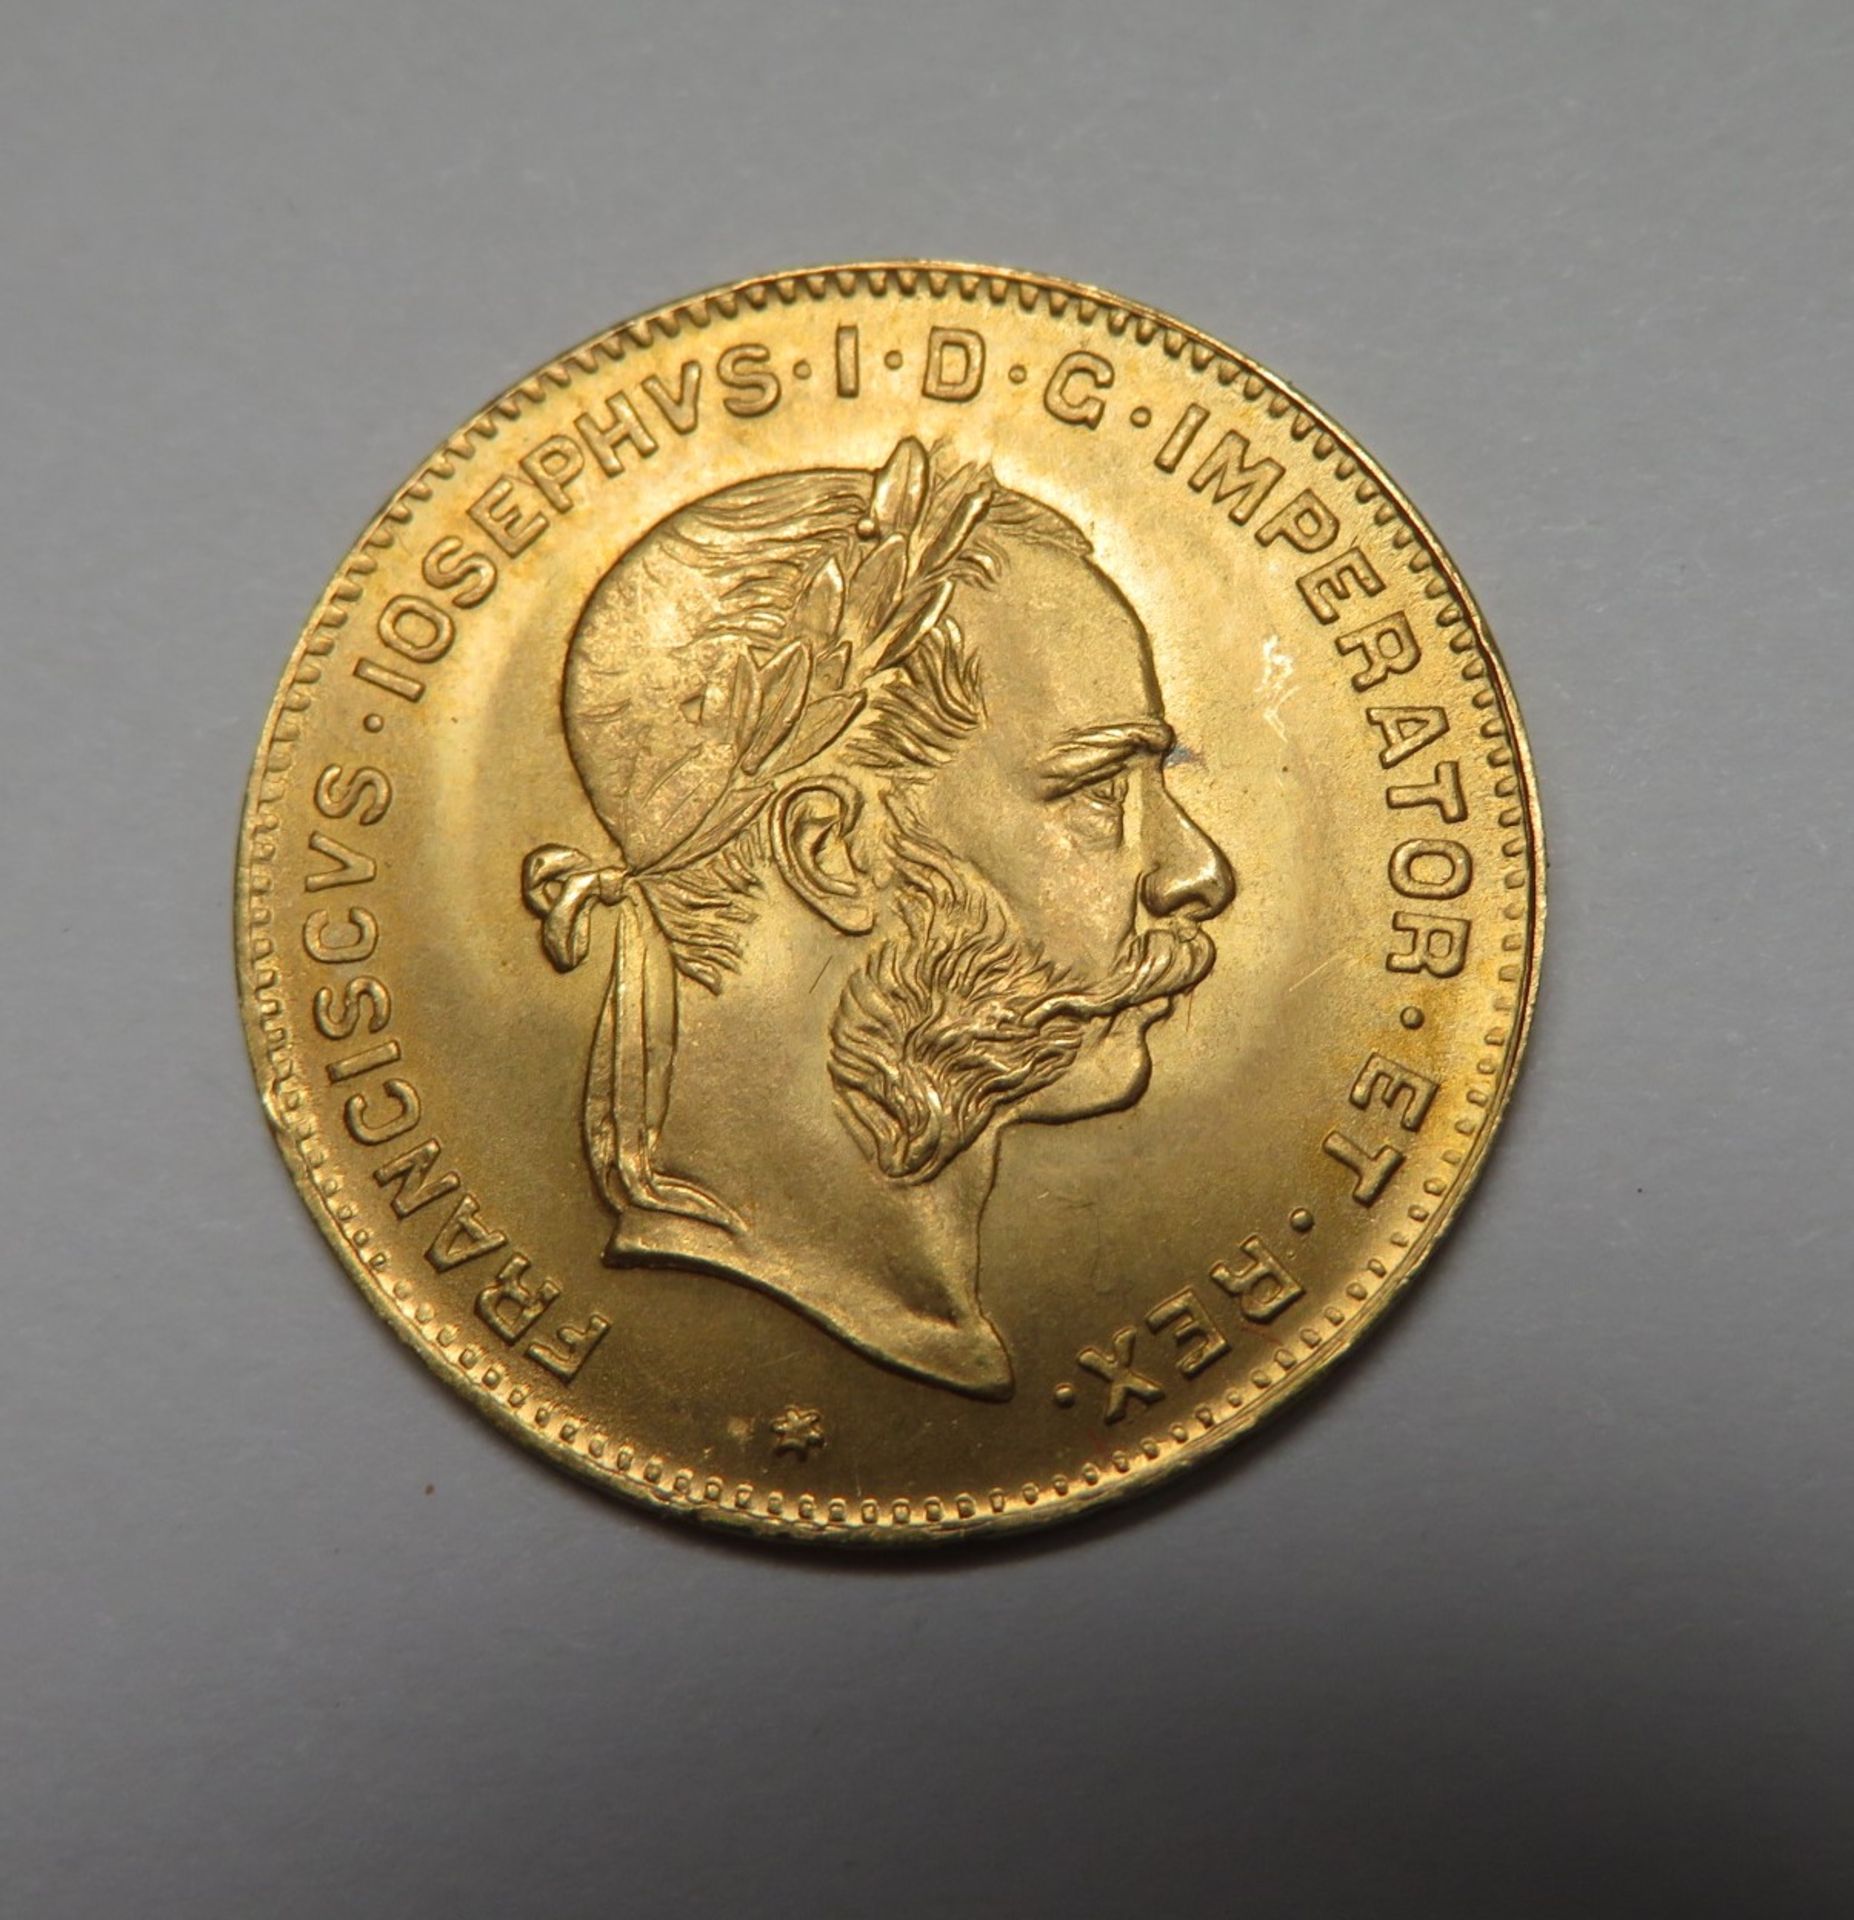 Goldmünze, Österreich, 4 Florin, 1892, Gold 986/000, 3,22 g, d 1,9 cm.